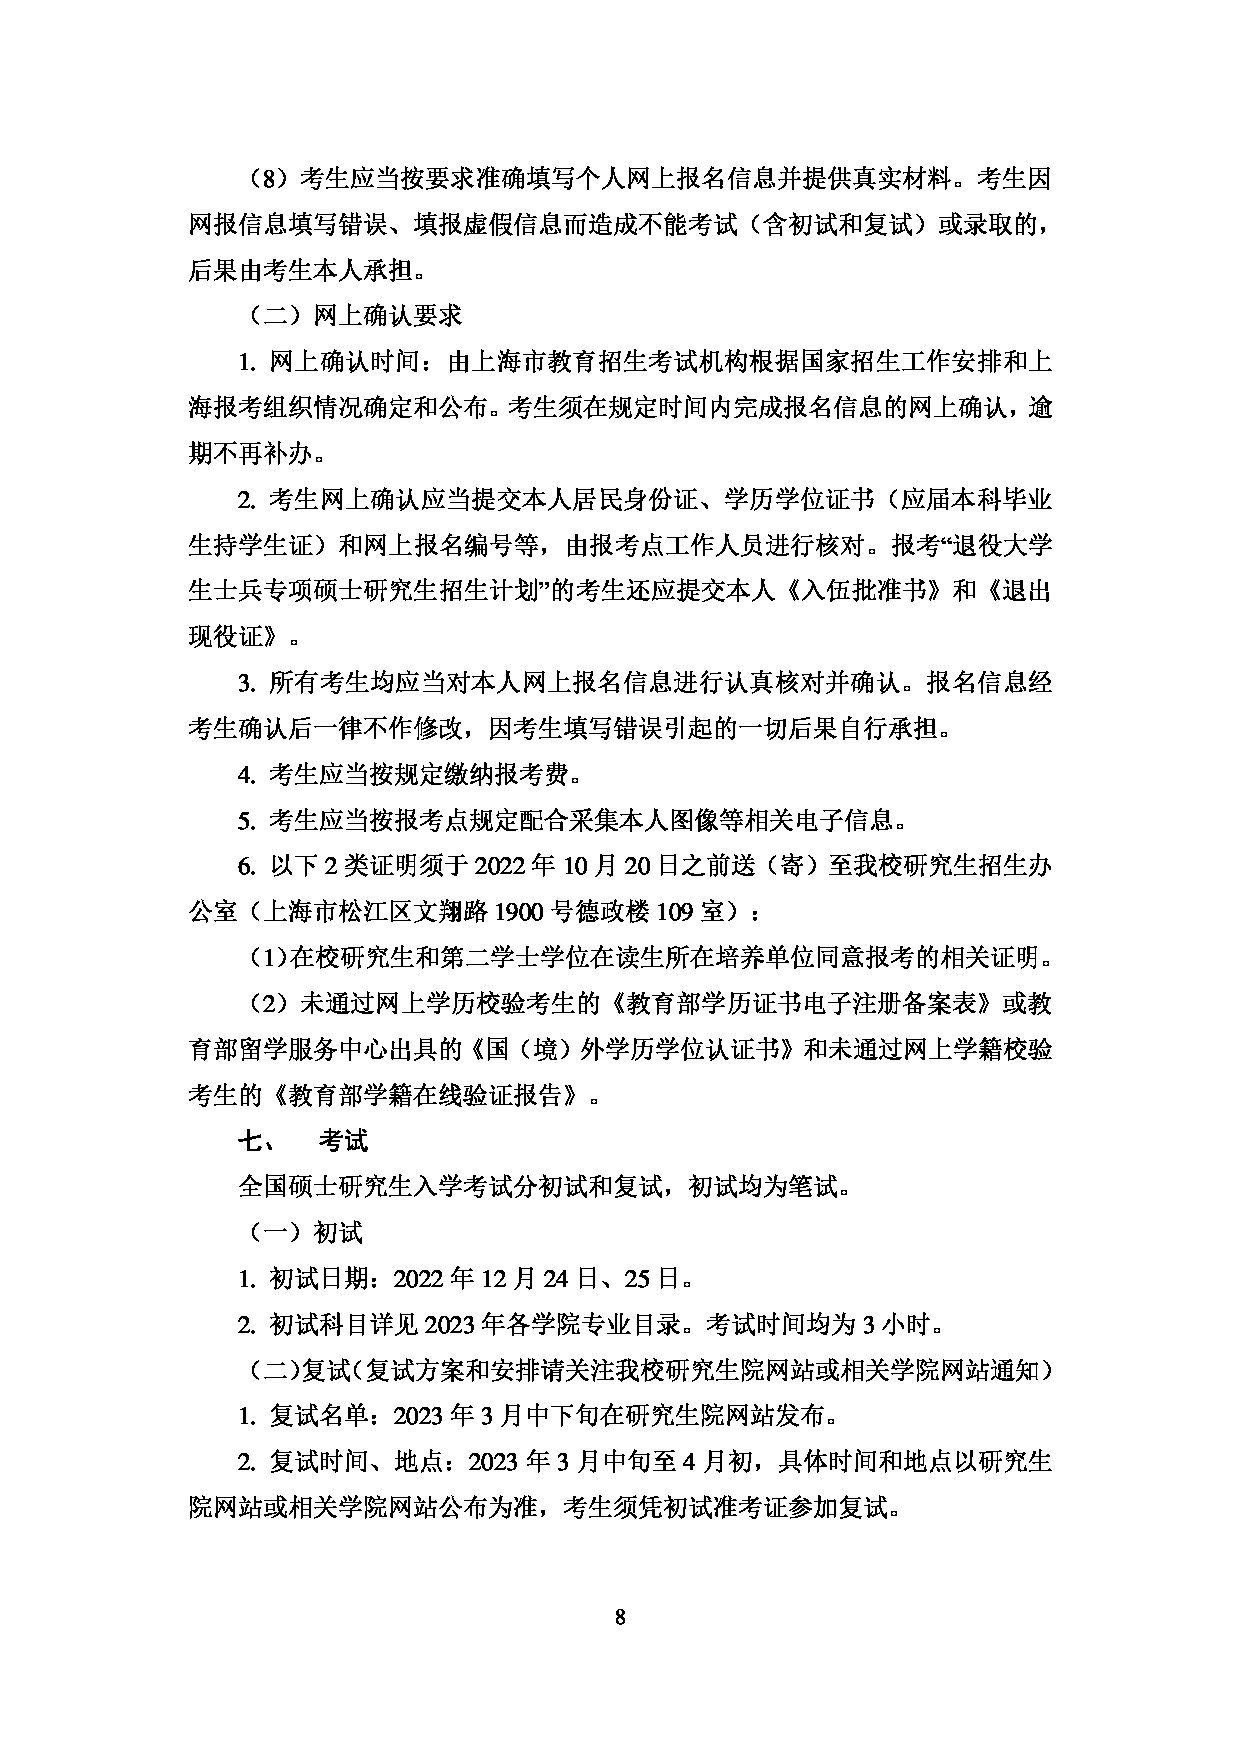 2023招生简章：上海对外经贸大学2023年招收攻读硕士学位研究生简章第10页